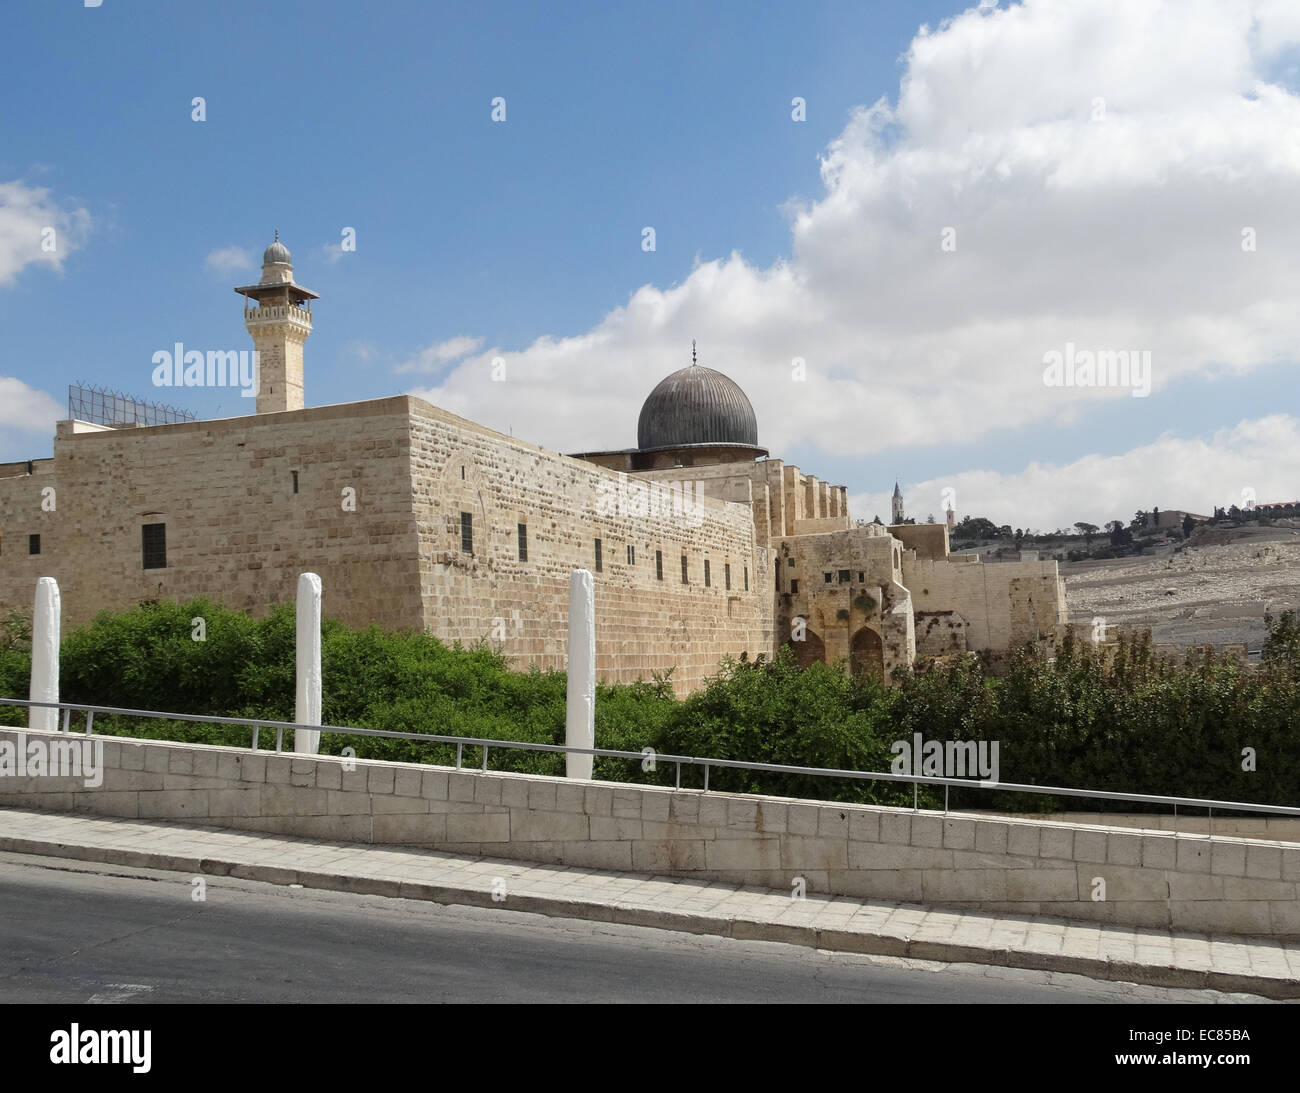 La Moschea di Al-Aqsa; il terzo sito più sacro dell'Islam; si trova nella città vecchia di Gerusalemme. Foto Stock